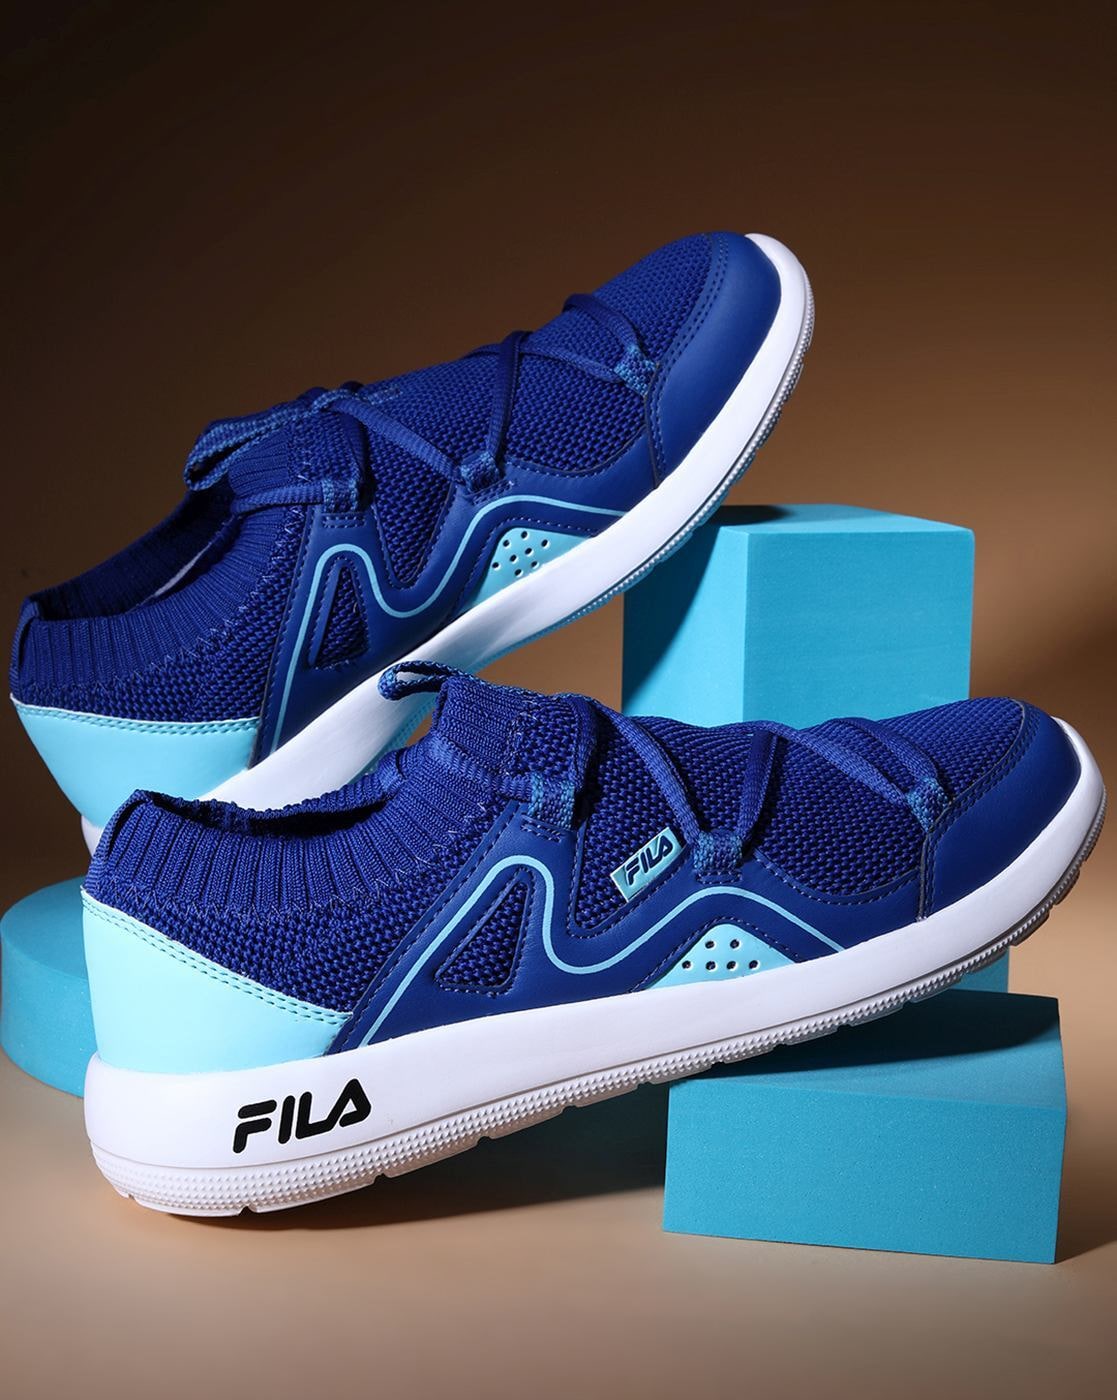 Buy Blue Sports Shoes for FILA Online | Ajio.com